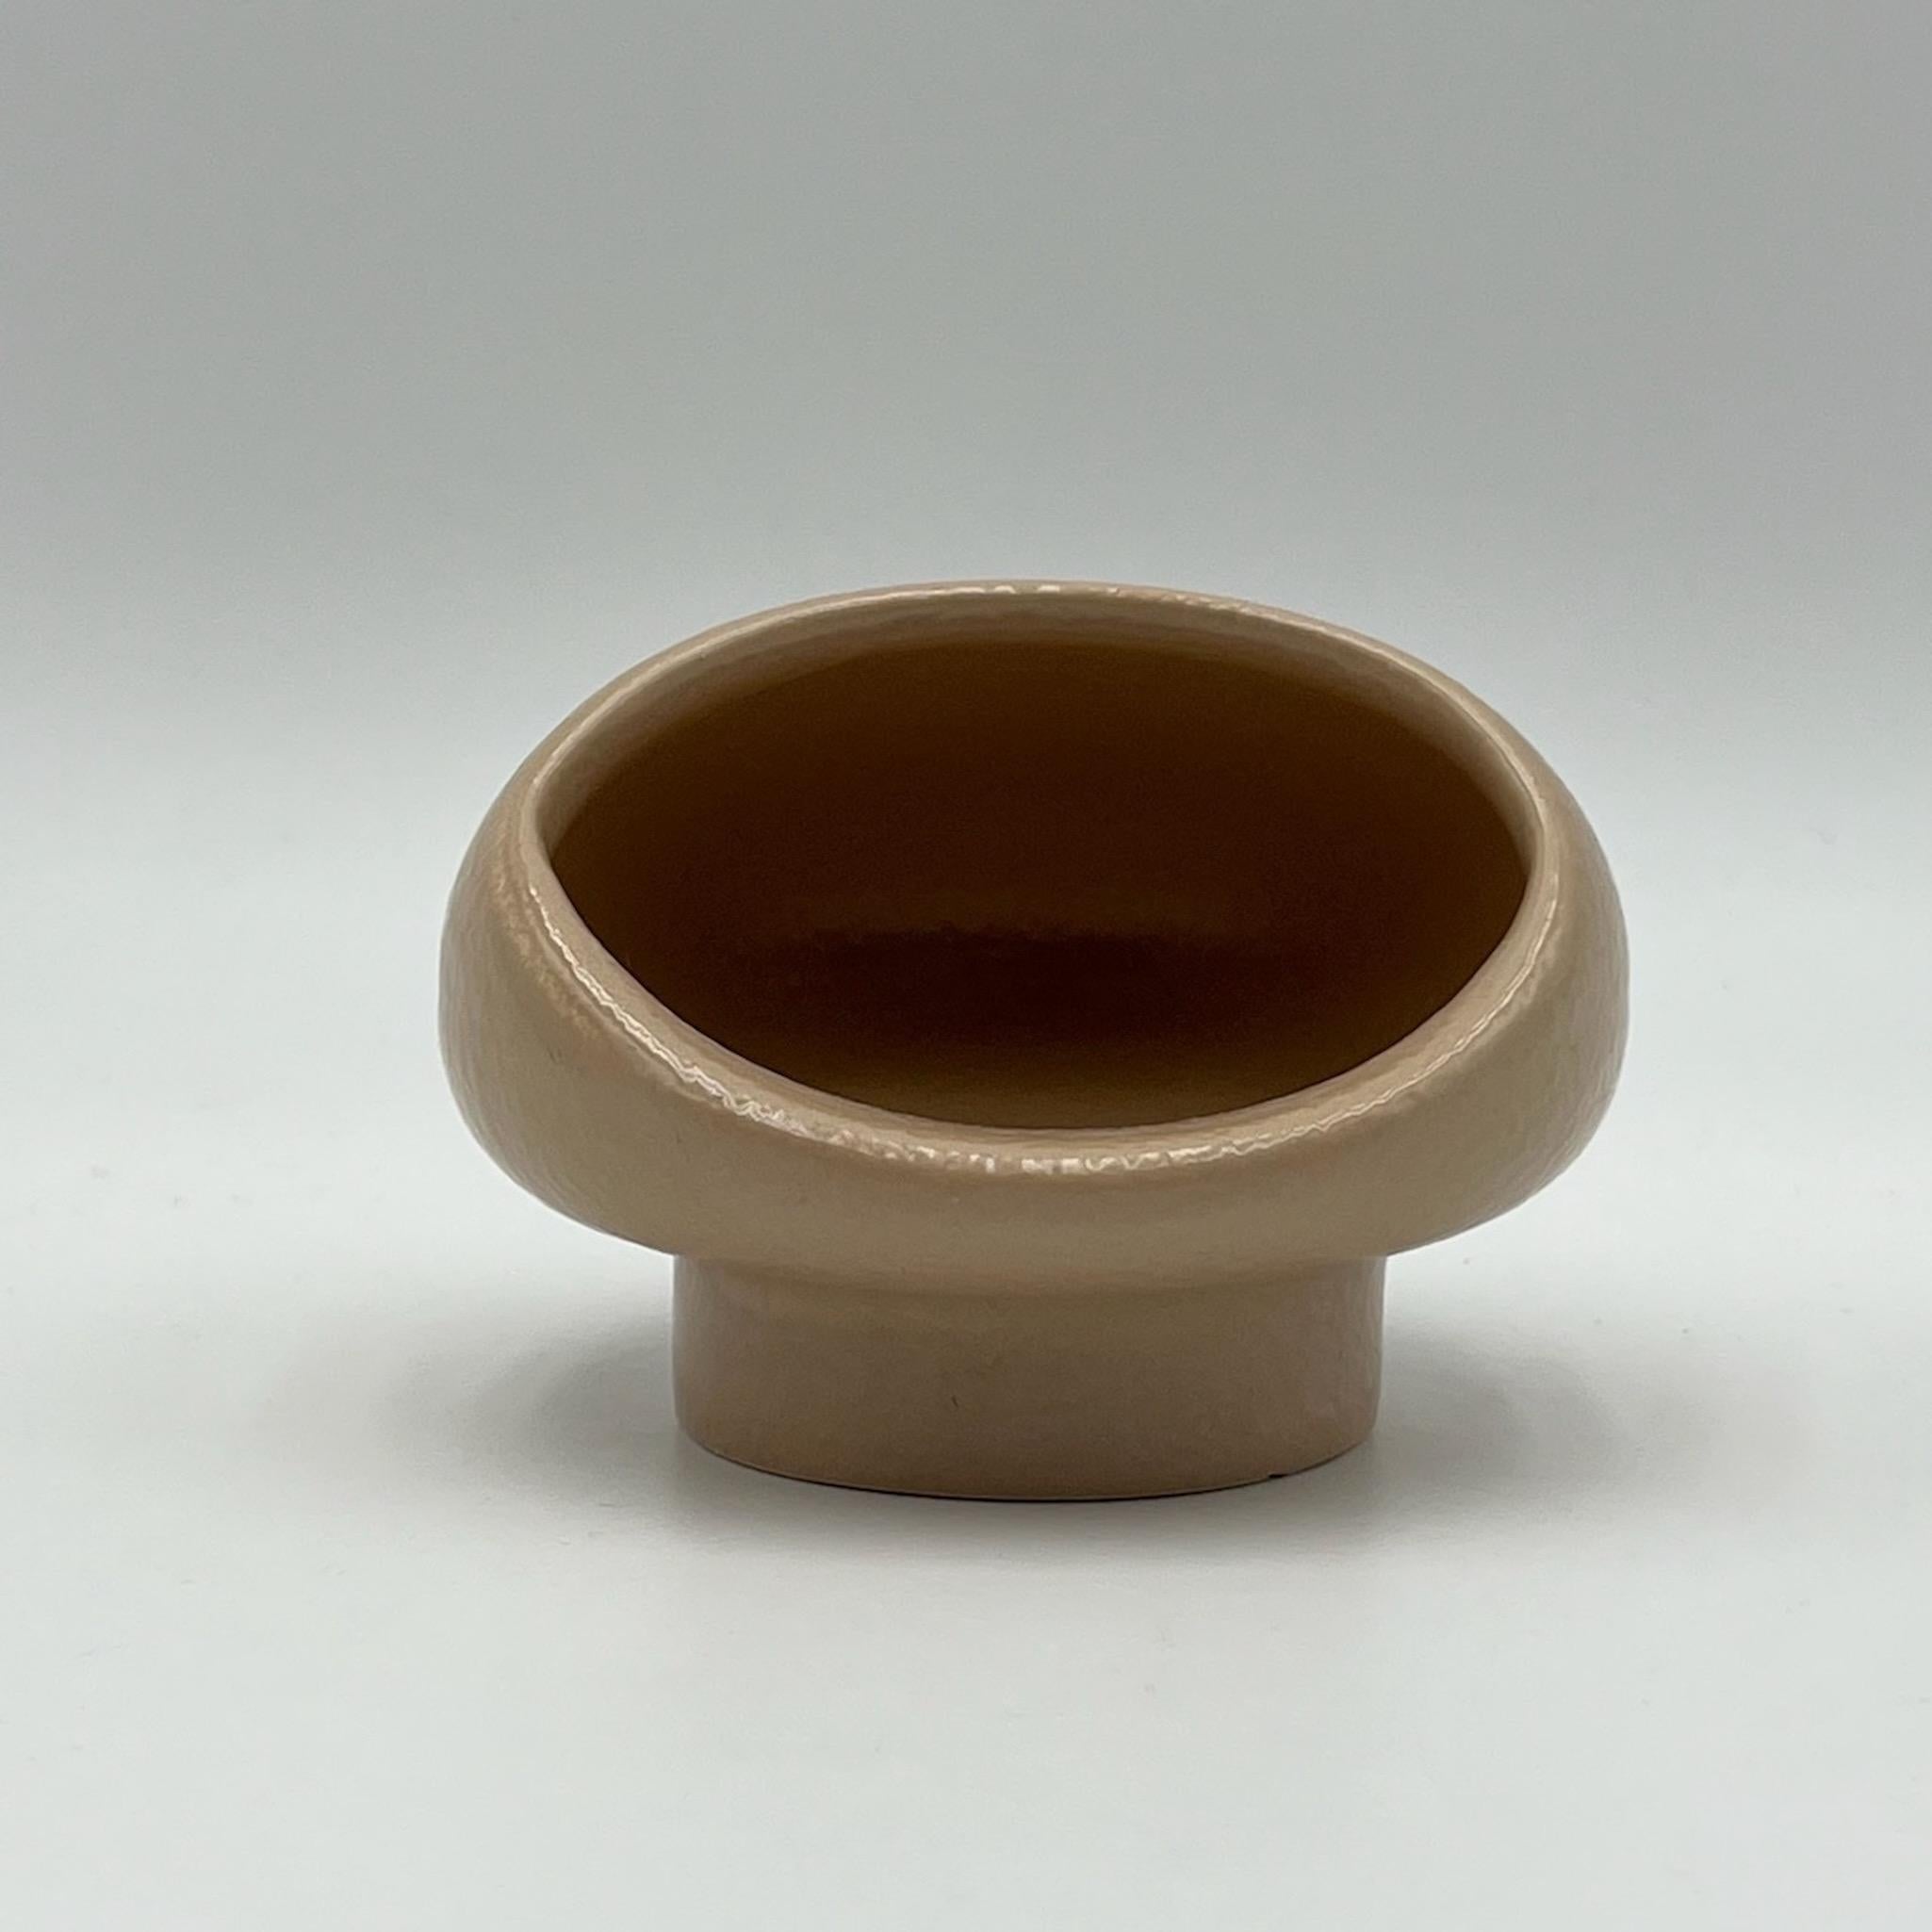 Magnifique vase en céramique conçu par le Studio/One, à Milan, pour Gabbianelli à la fin des années 60. Cette pièce est ornée d'une élégante couleur beige et d'une texture 